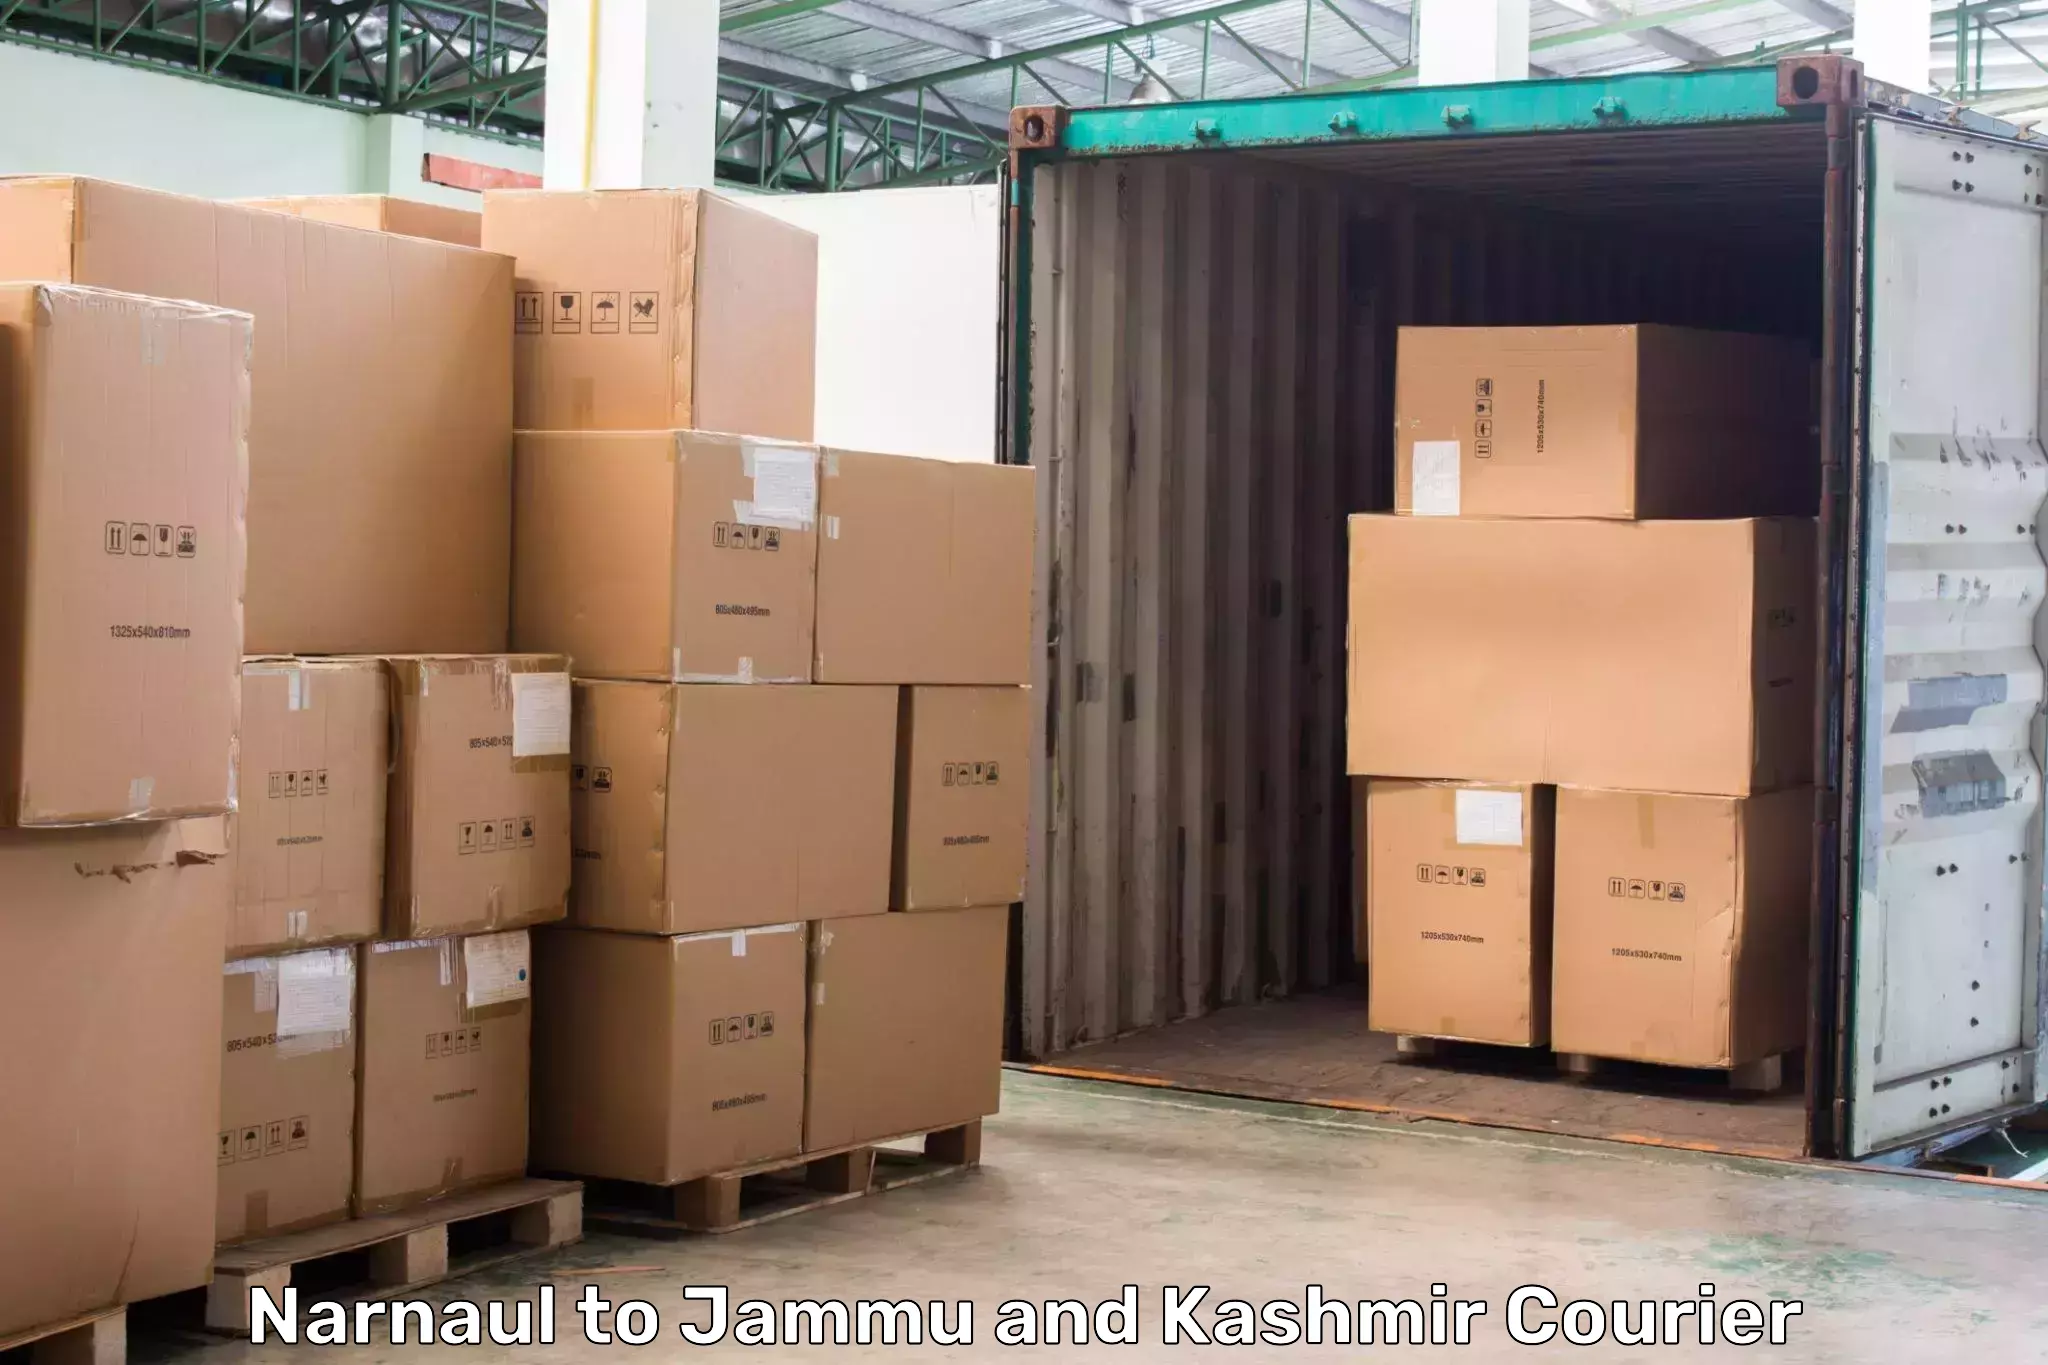 Express logistics service Narnaul to Jammu and Kashmir